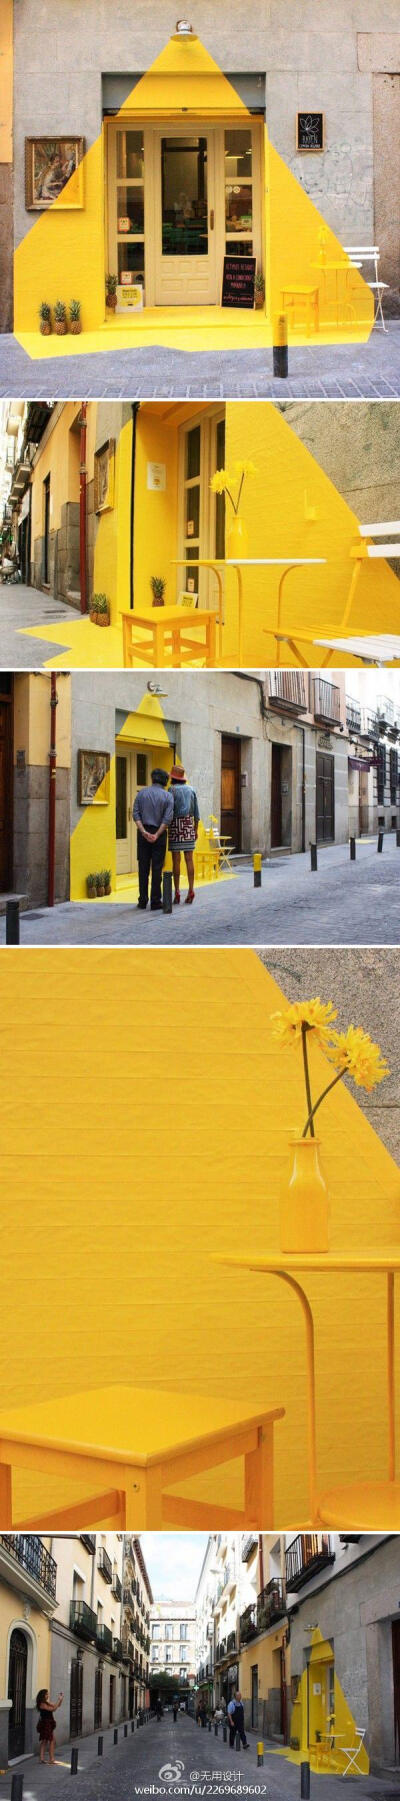 (fos) 是一个跨界工作室，其首个作品是在马德里一家素食餐厅的店门口制作了一个短期装置，这个装置也名为 (fos)，希腊语中意为“光”。他们使用黄色胶带、装饰画、几只菠萝和店门口的一盏灯创造了灯点亮后的效果，明…